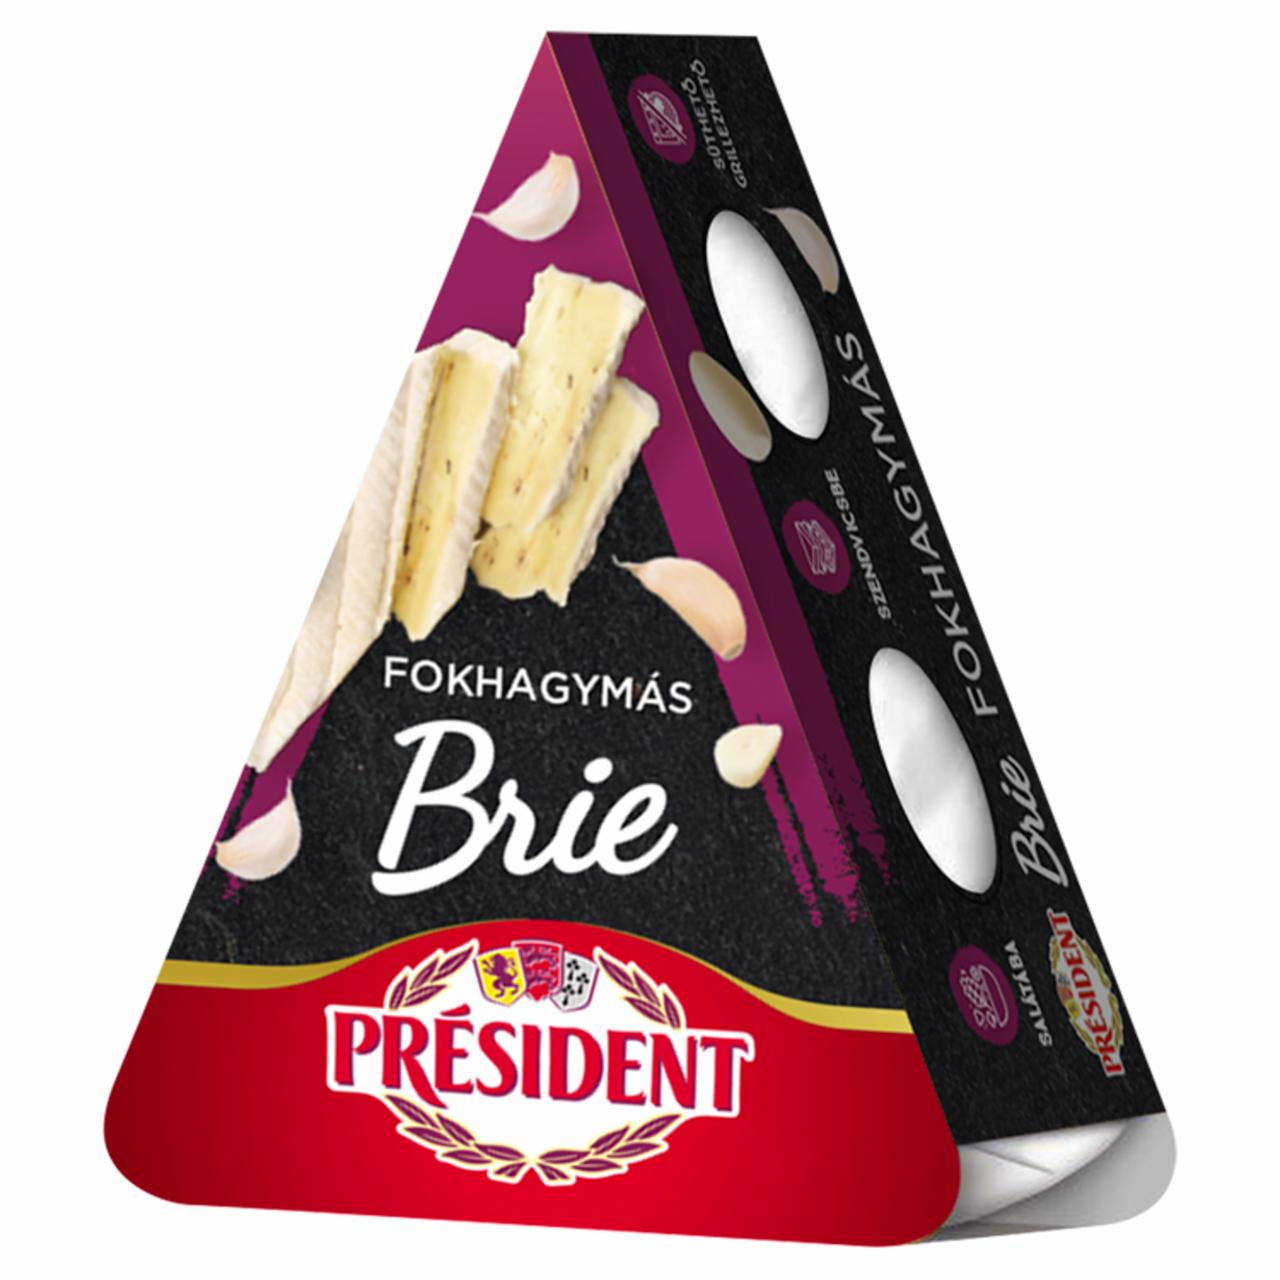 Képek - Président Brie fokhagymás, zsírdús sajt 125 g